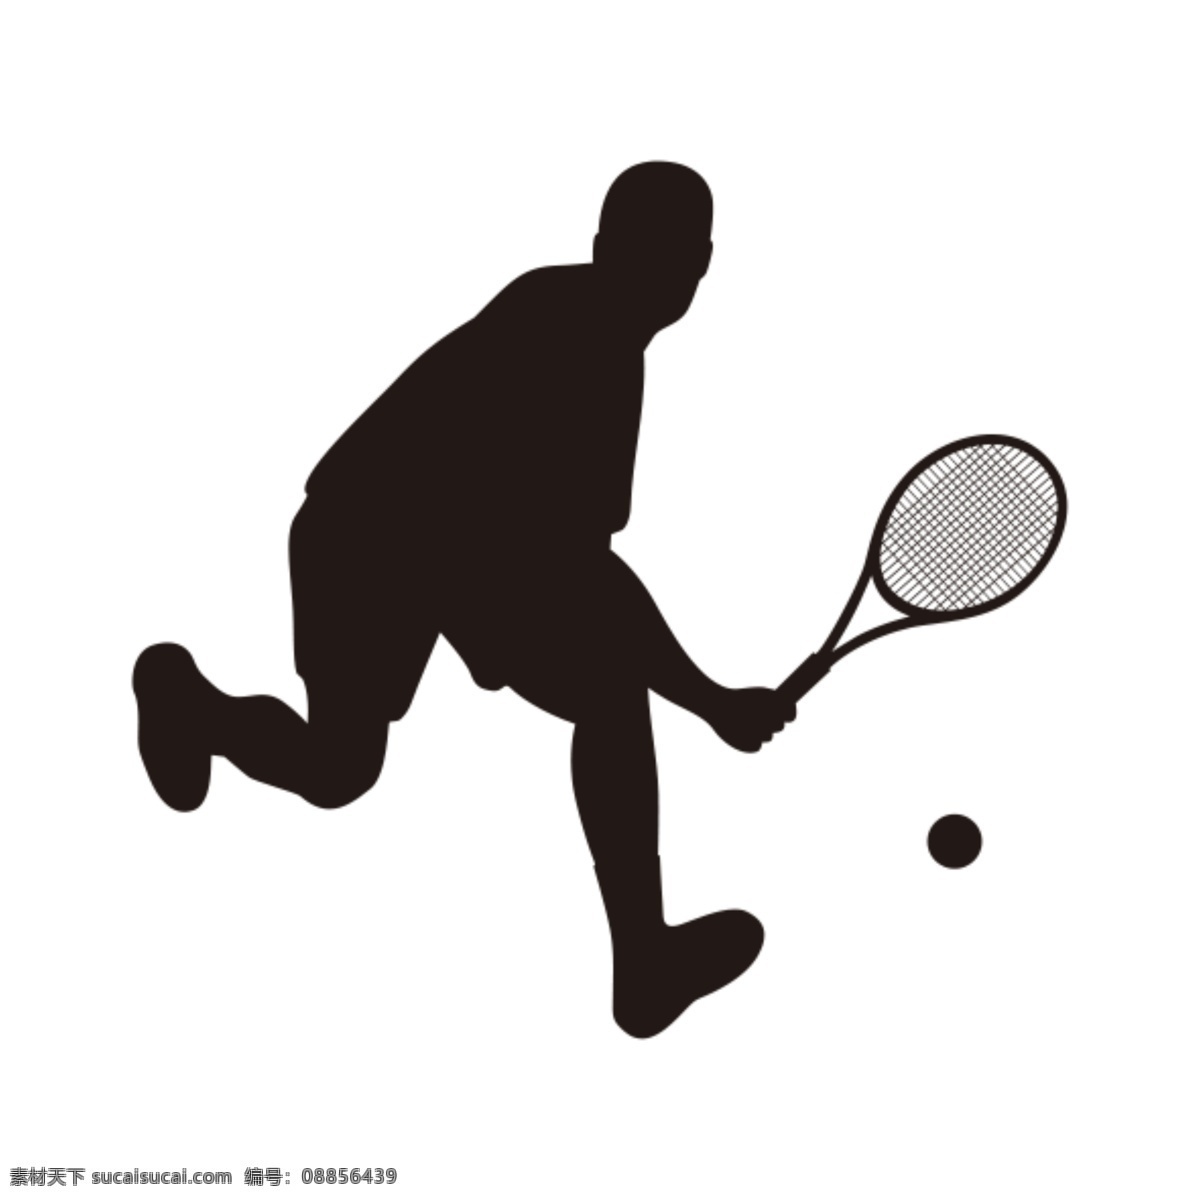 网球运动 打网球动作 网球运动员 打网球剪影 网球人物剪影 网球矢量剪影 网球比赛 网球赛 网球训练 打网球线稿 矢量网球线稿